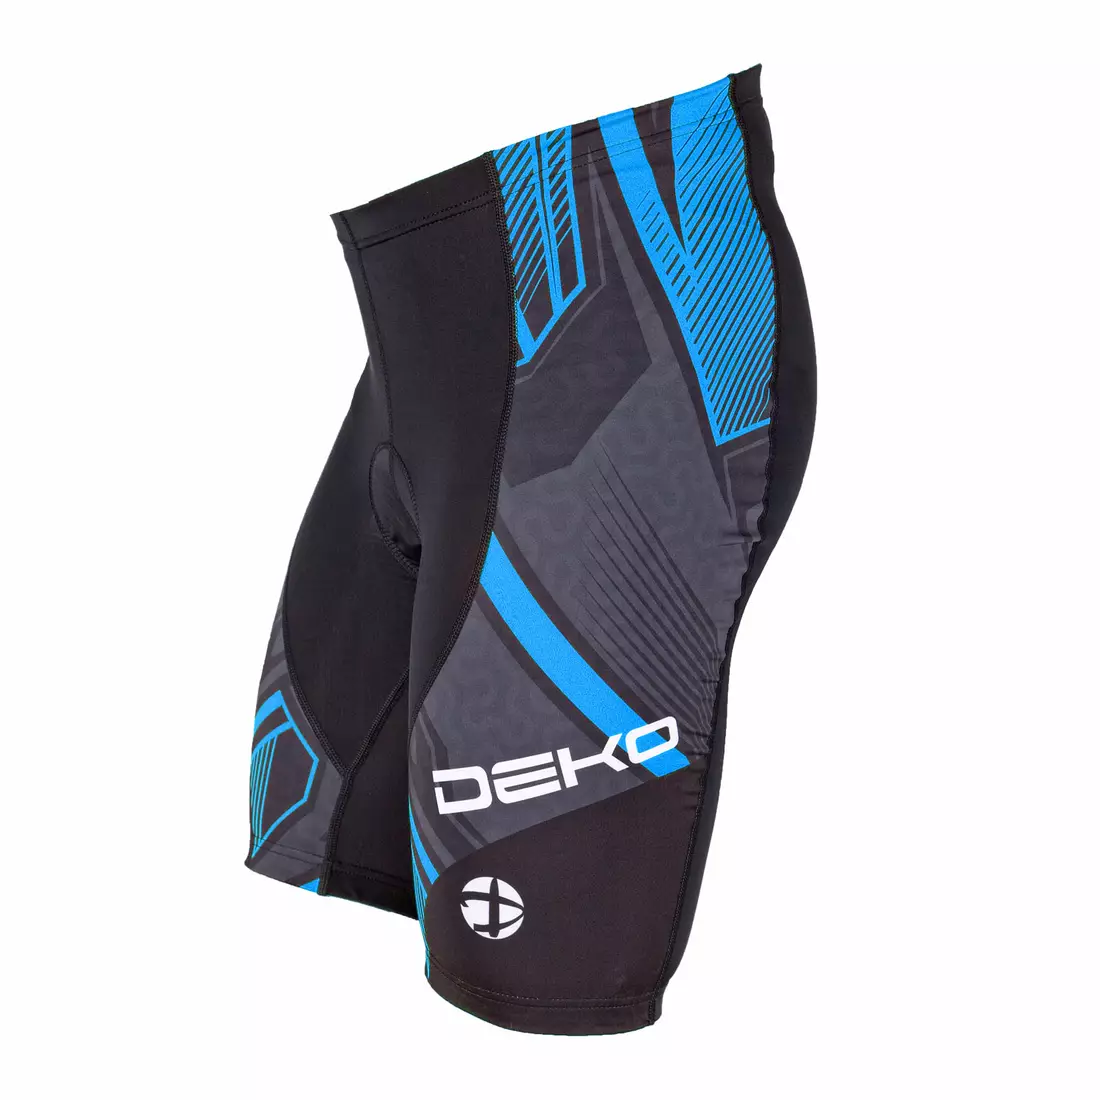 DEKO men's cycling shorts GEL blue DK-2020-005